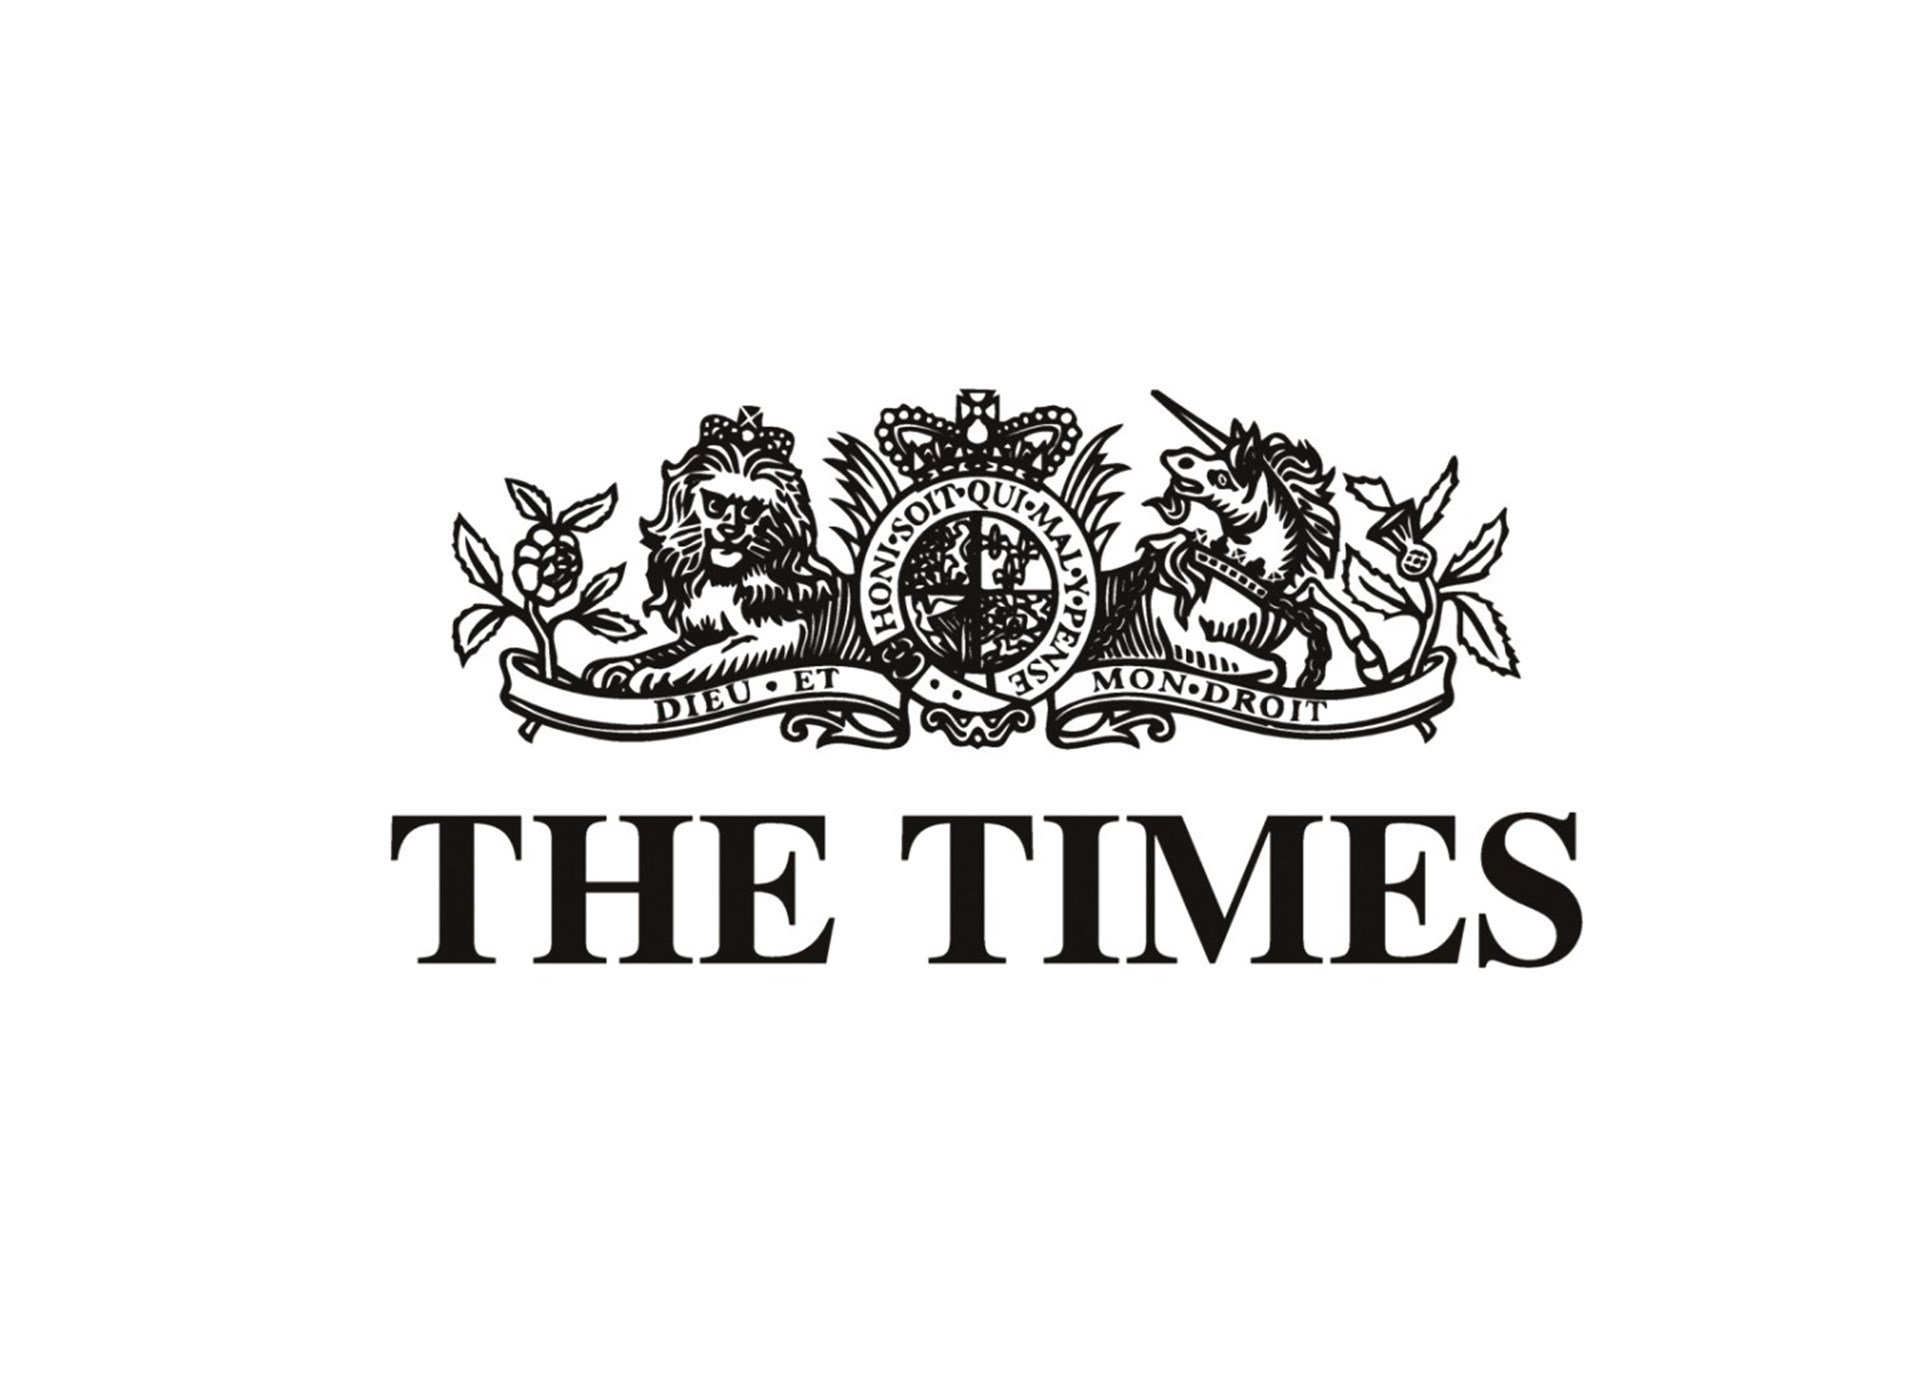 Duro editorial de 'The Times': "Se debe permitir el referéndum"